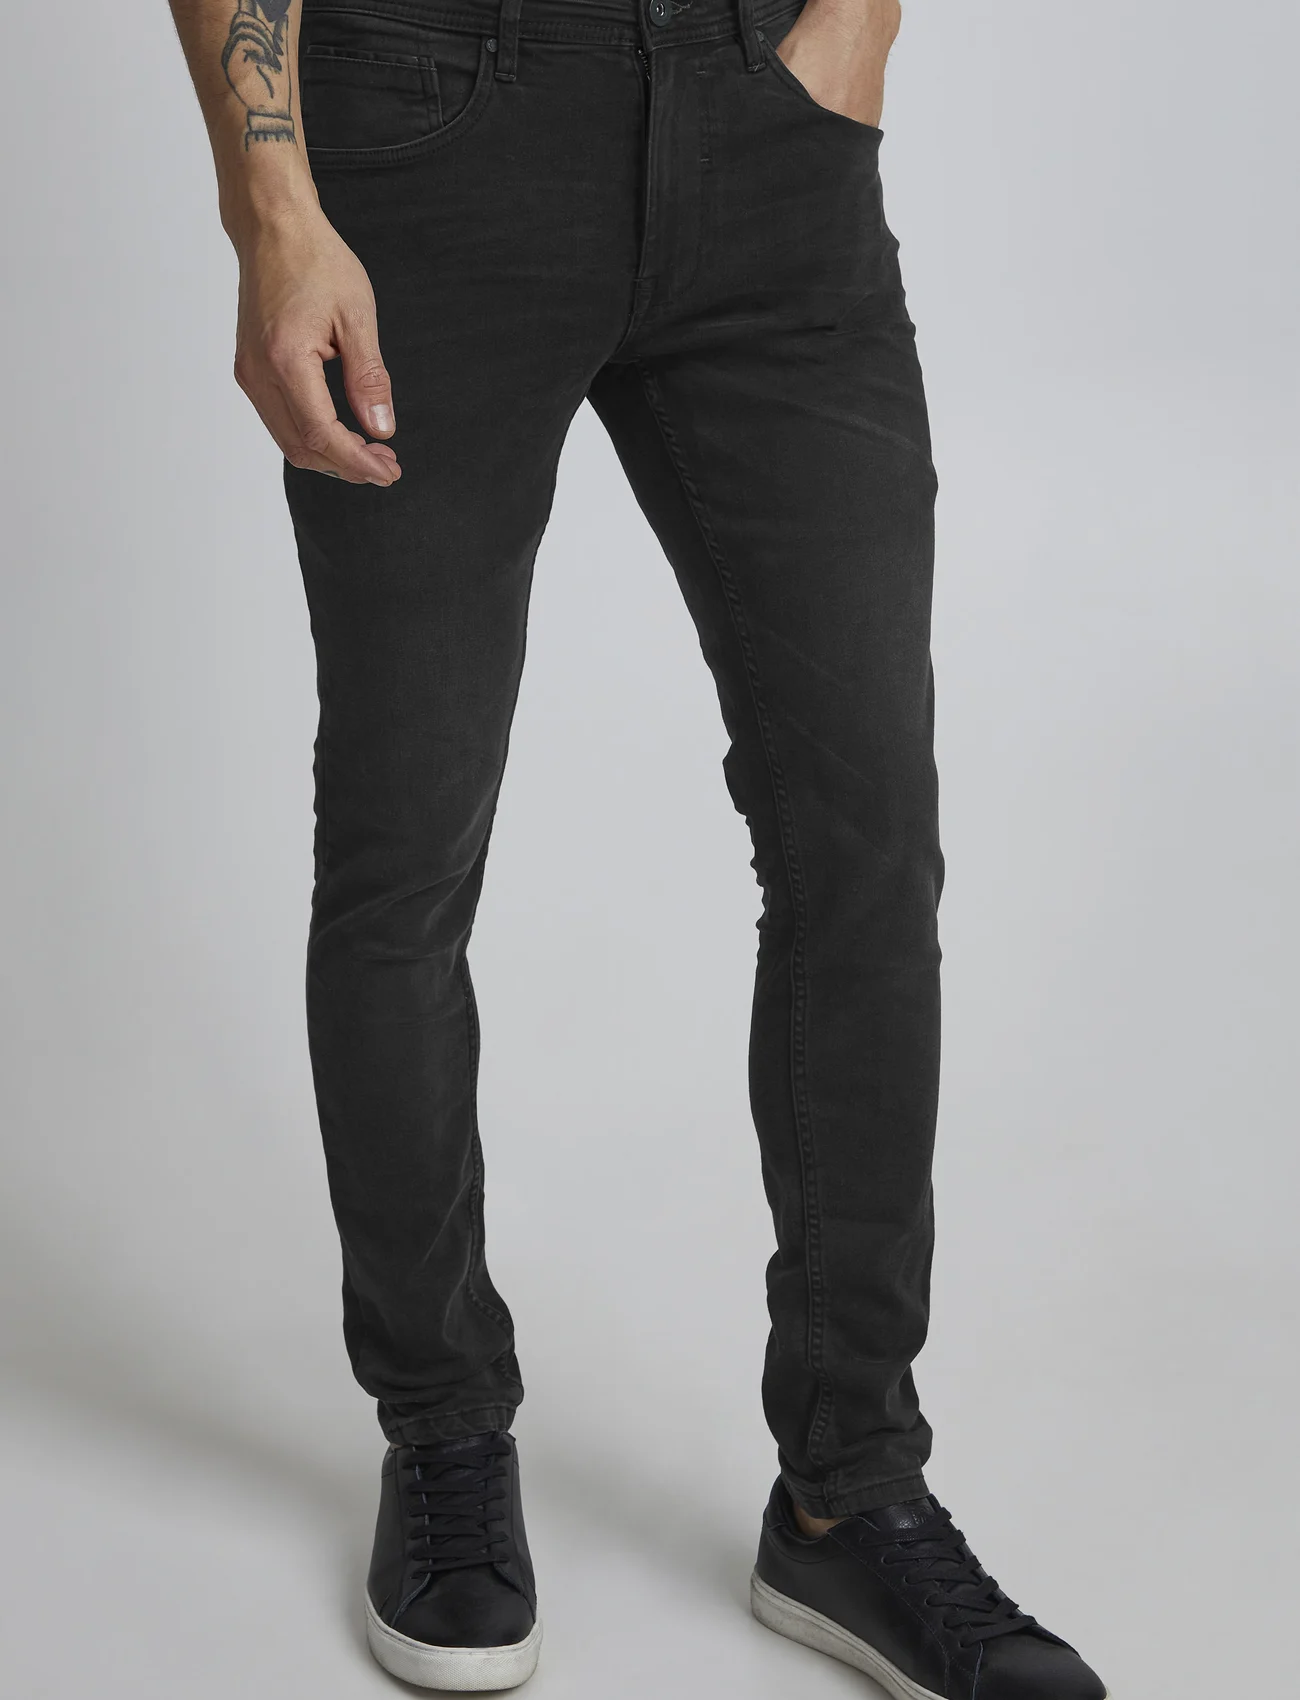 Blend - Jet fit - NOOS - slim fit jeans - denim black - 0